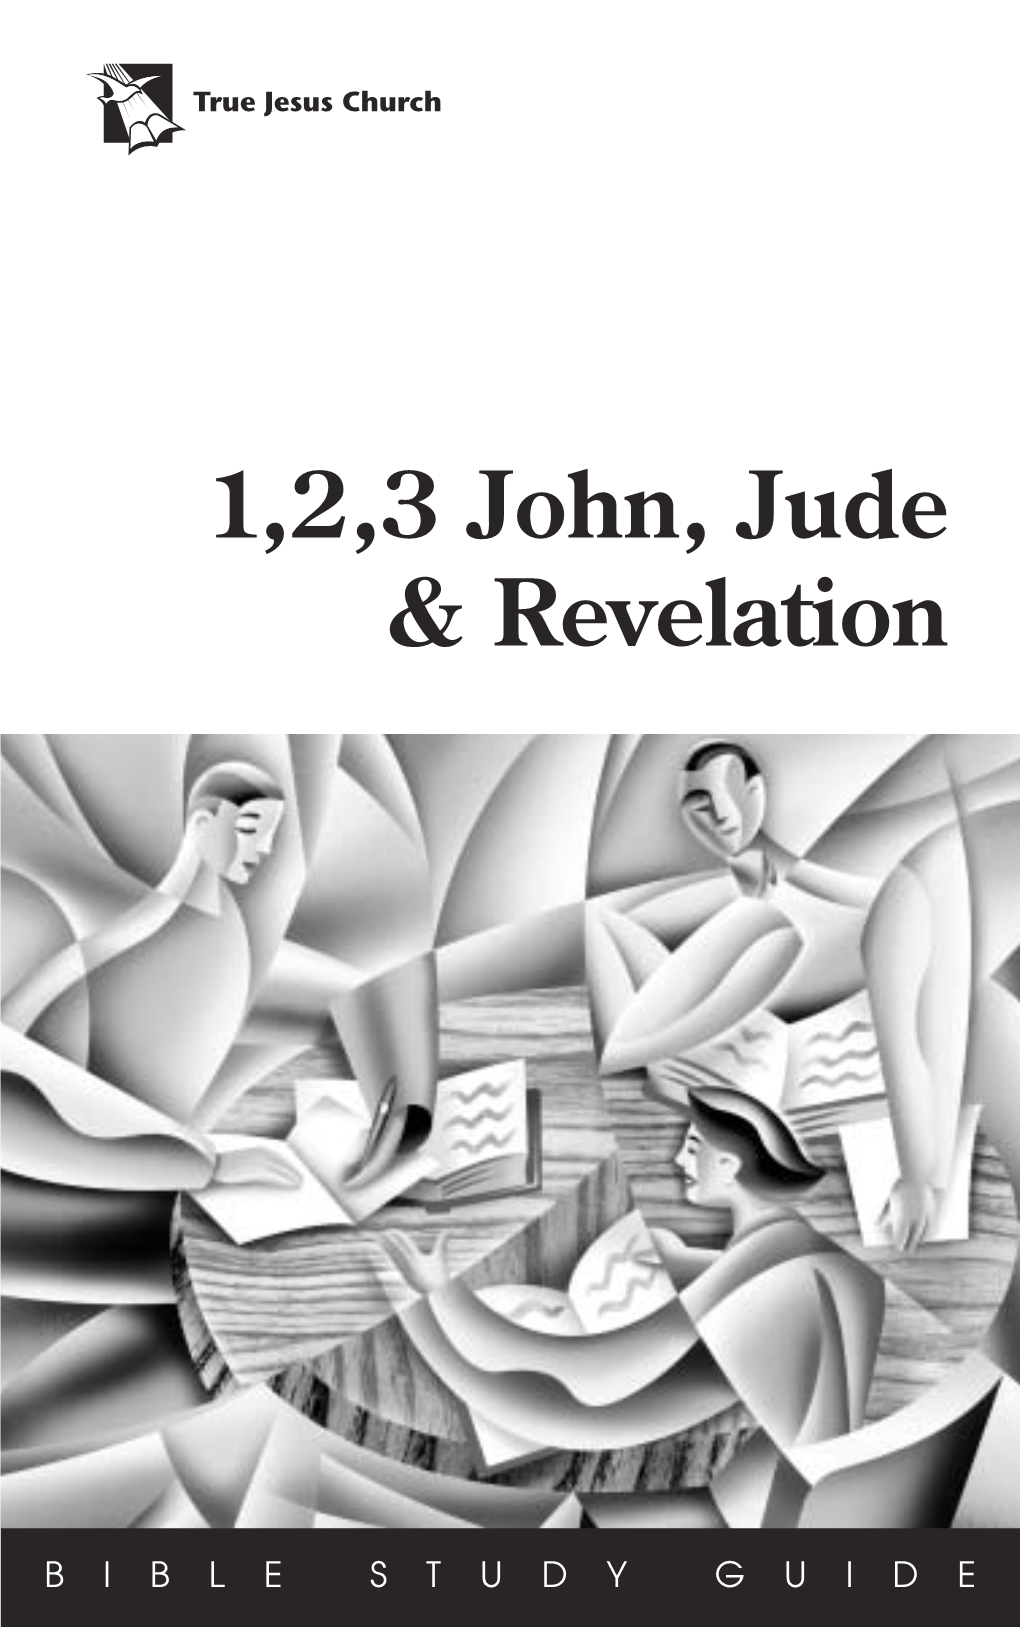 1,2,3 John, Jude & Revelation